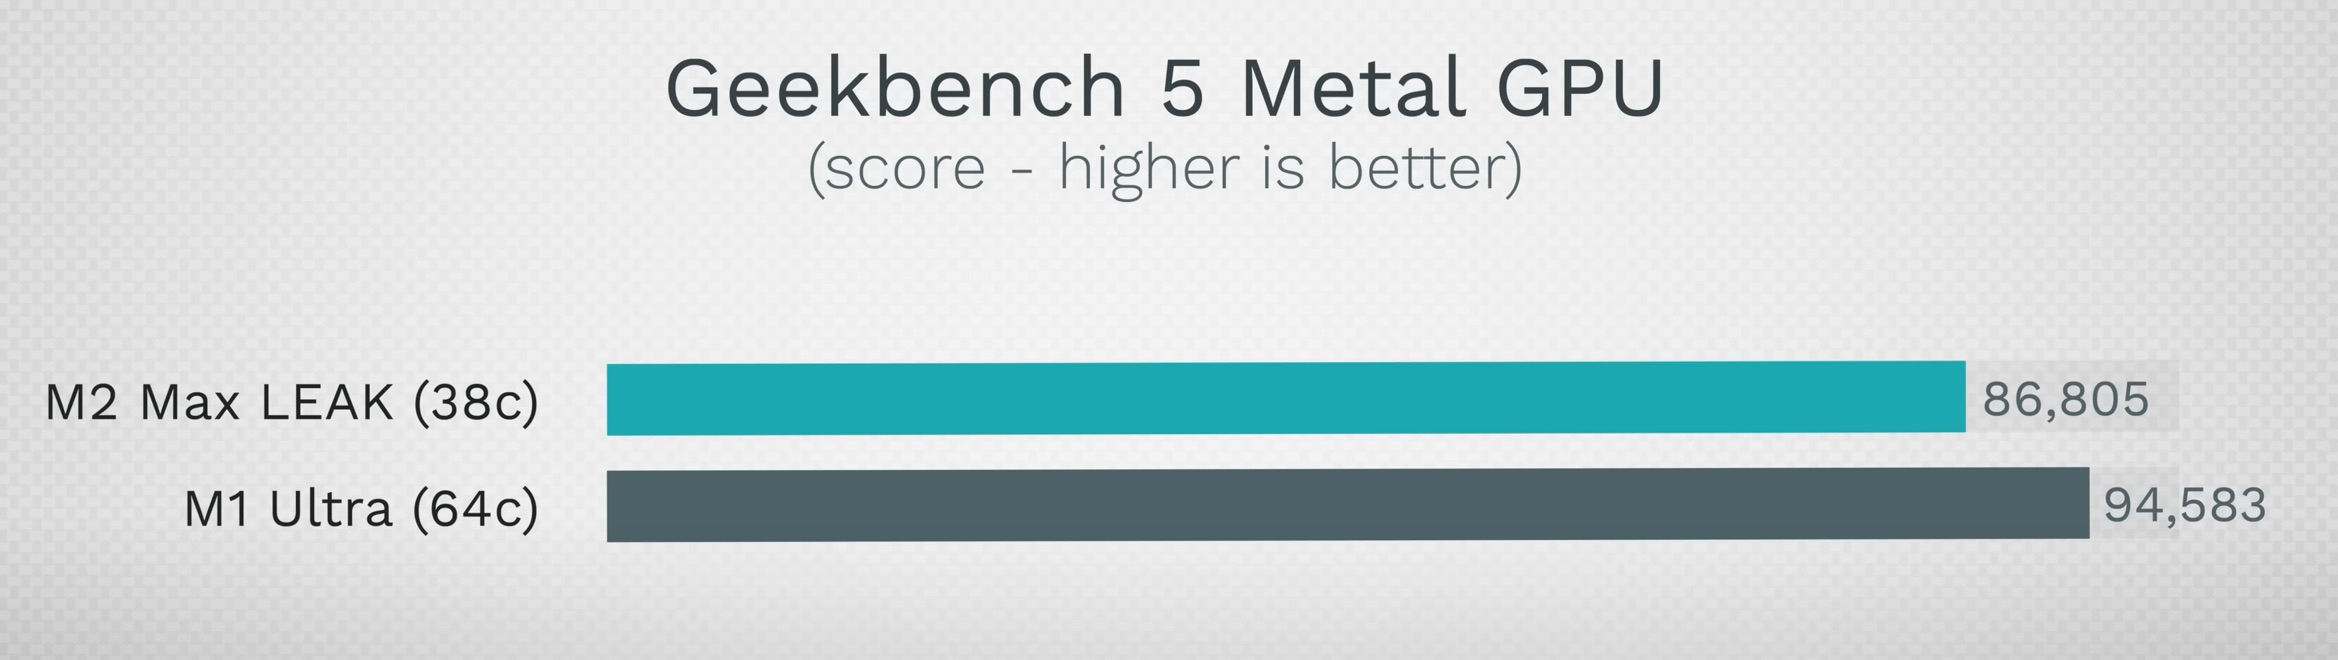 Mejora de rendimiento de la GPU del M2 Max en comparación con la del M1 Ultra